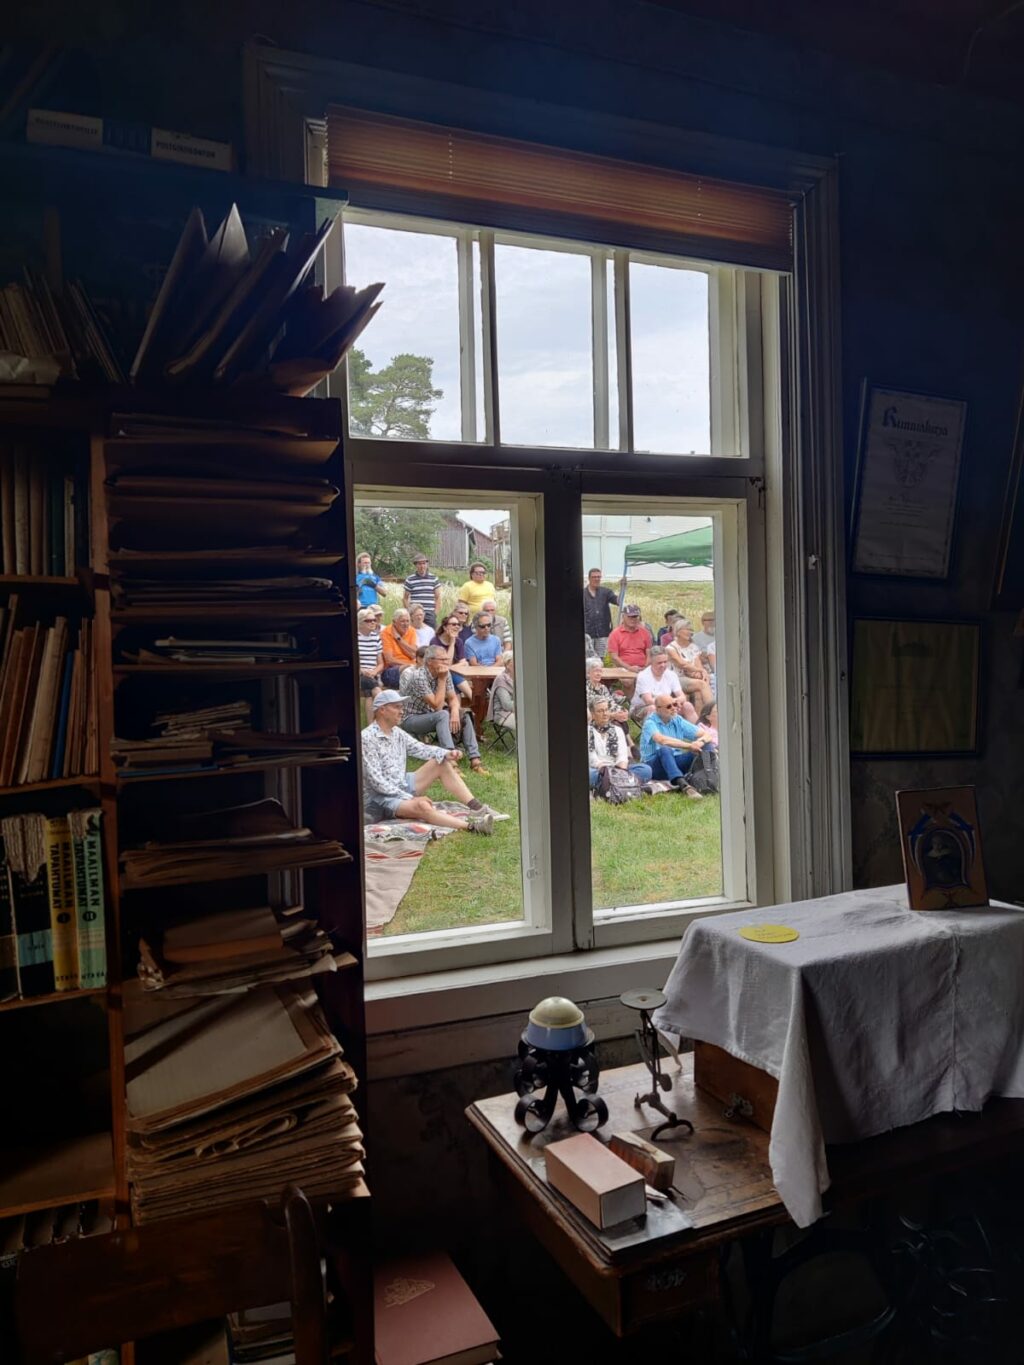 Rakennuksen sisältä otettu kuva ikkunasta. Sisällä näkyy kirjahylly, jossa kirjoja ja muita tavaroita. Ikkunan takana näkyy paljon ihmisiä, joista osa seisoo ja osa istuu nurmikolla.